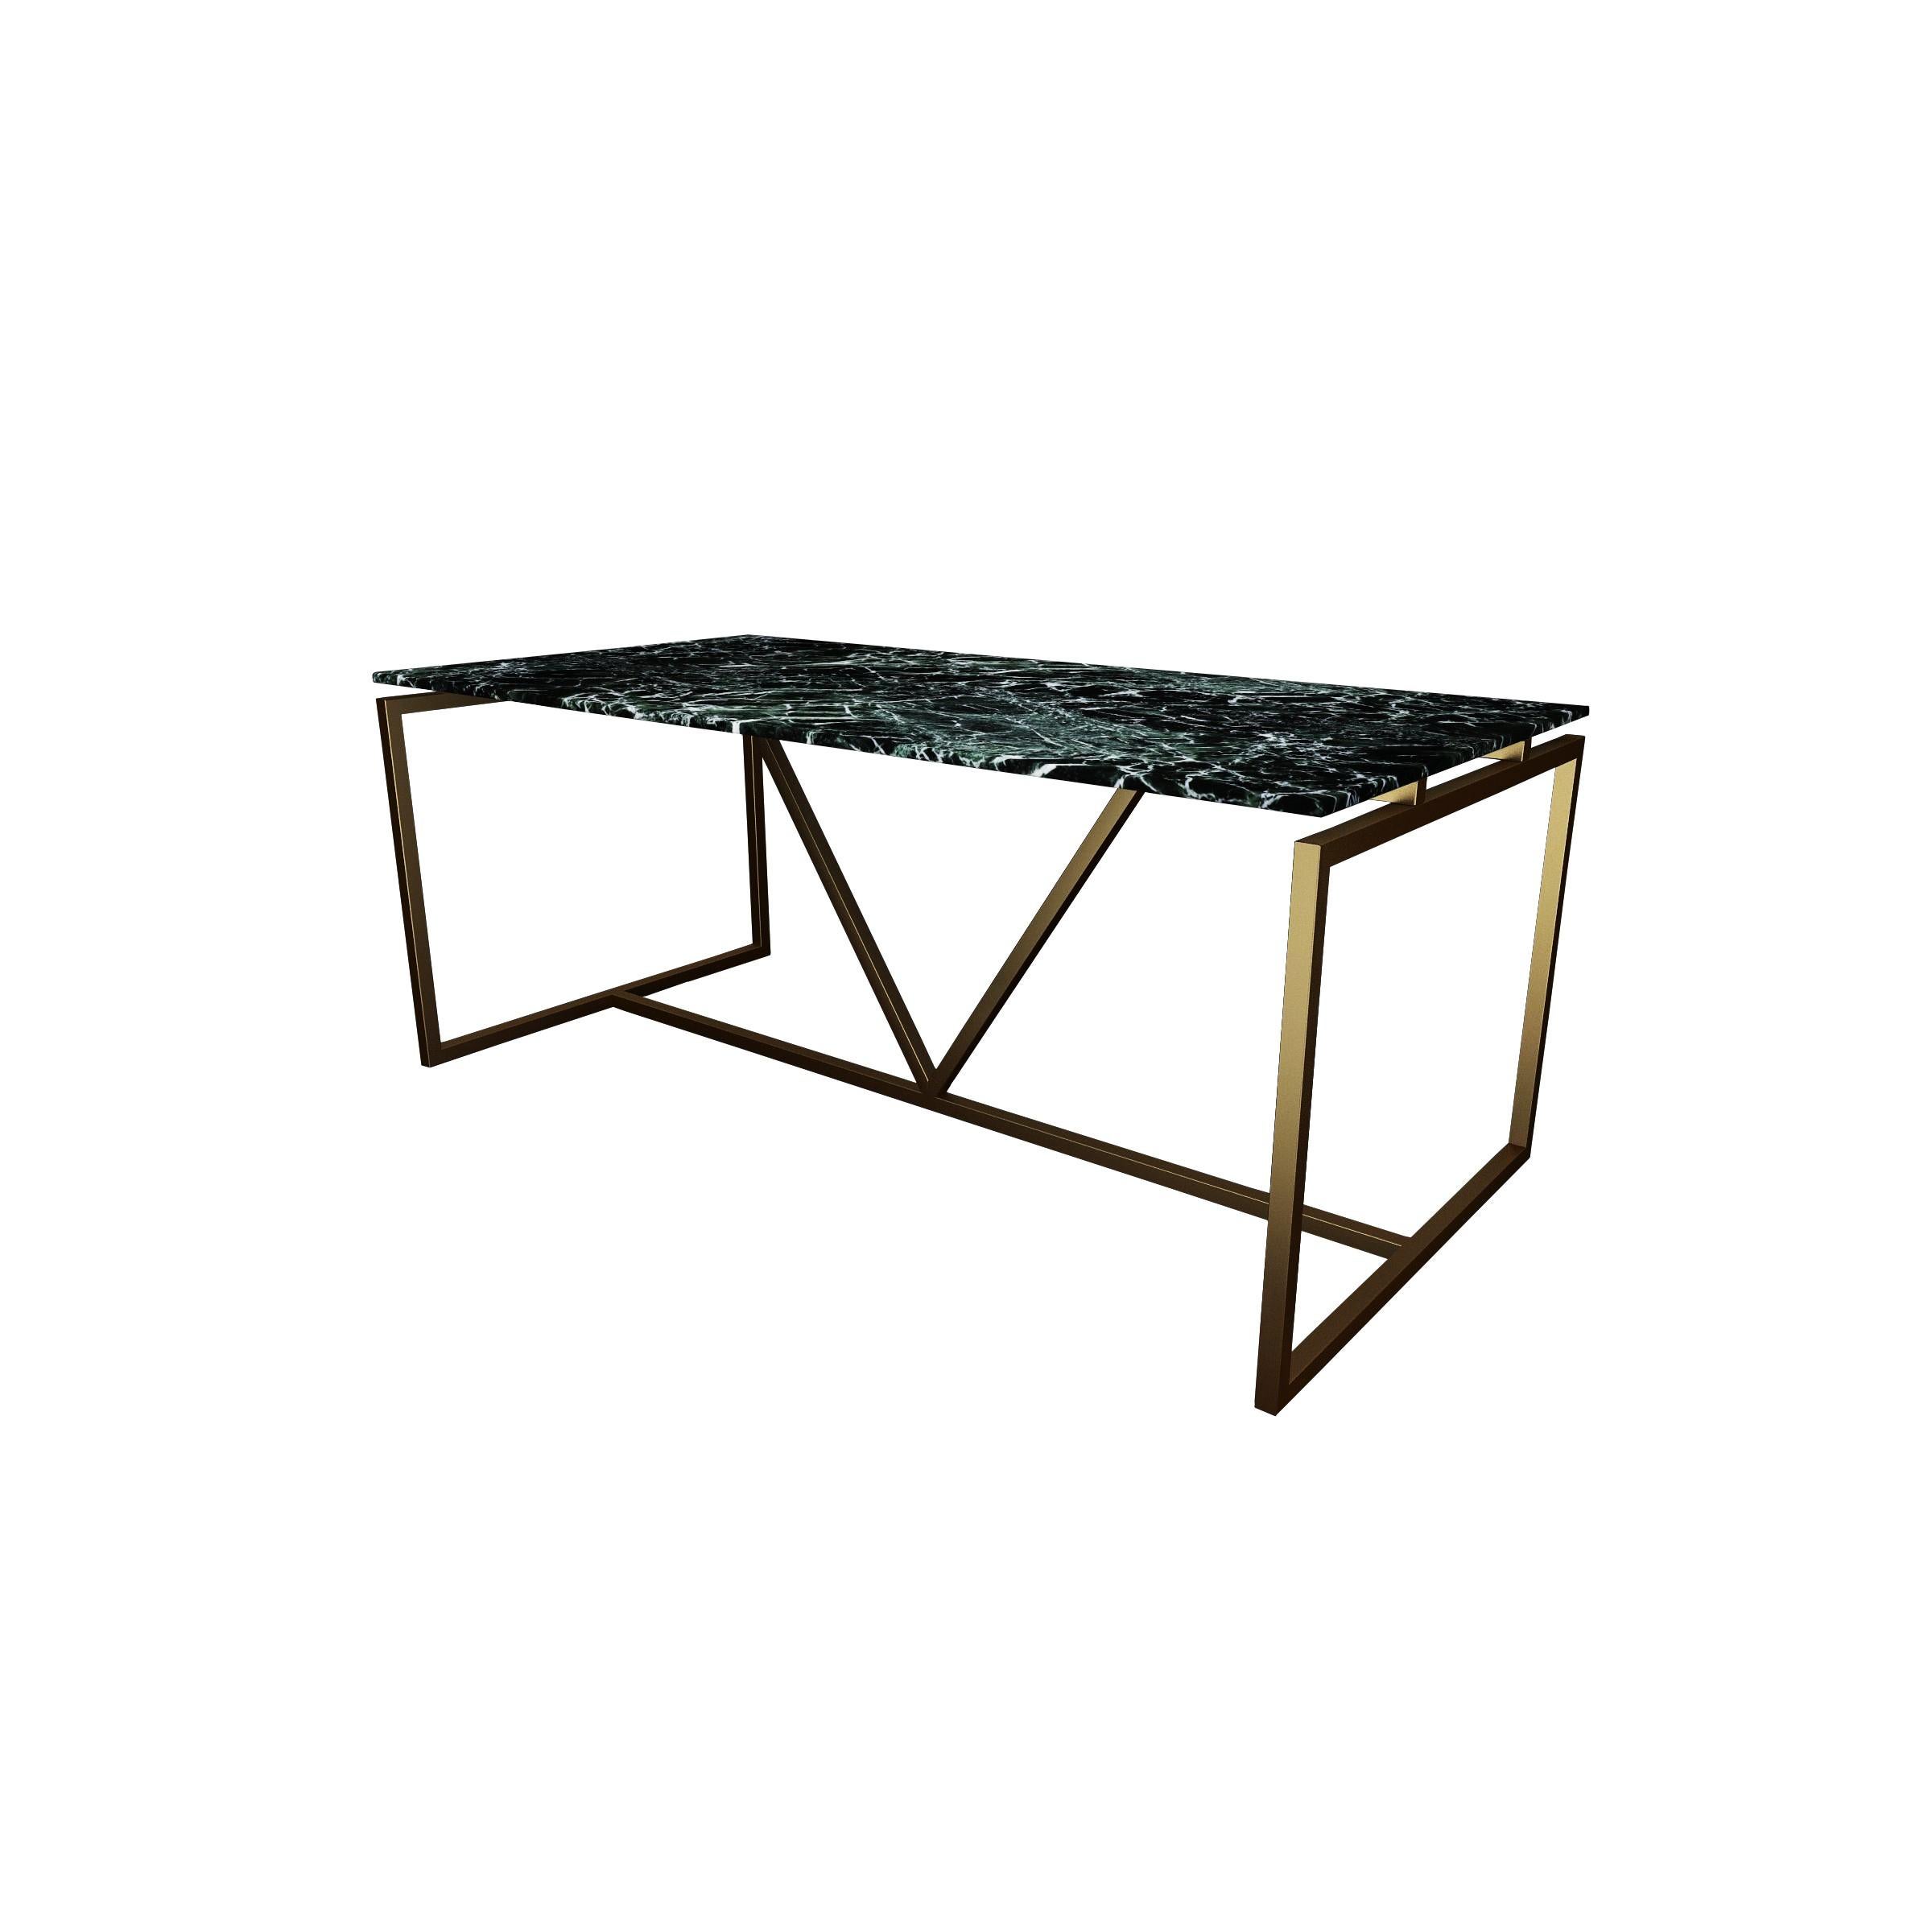 Scandinavian Modern NORDST OLIVIA Dining Table, Italian White Mountain Marble, Danish Modern Design For Sale